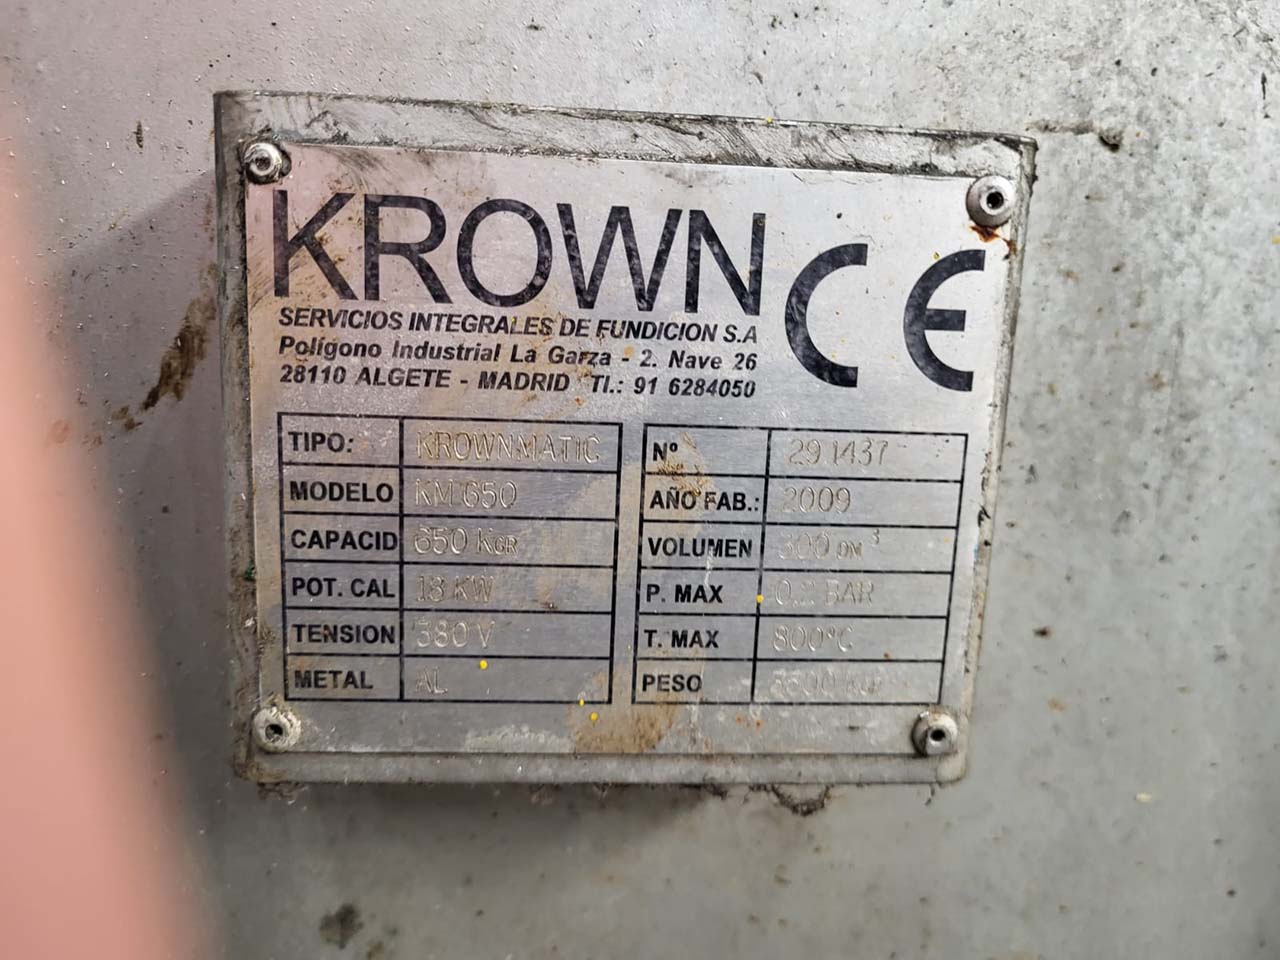 Cuptor de dozare Krown Krownmatic KM 650 O1759, folosit